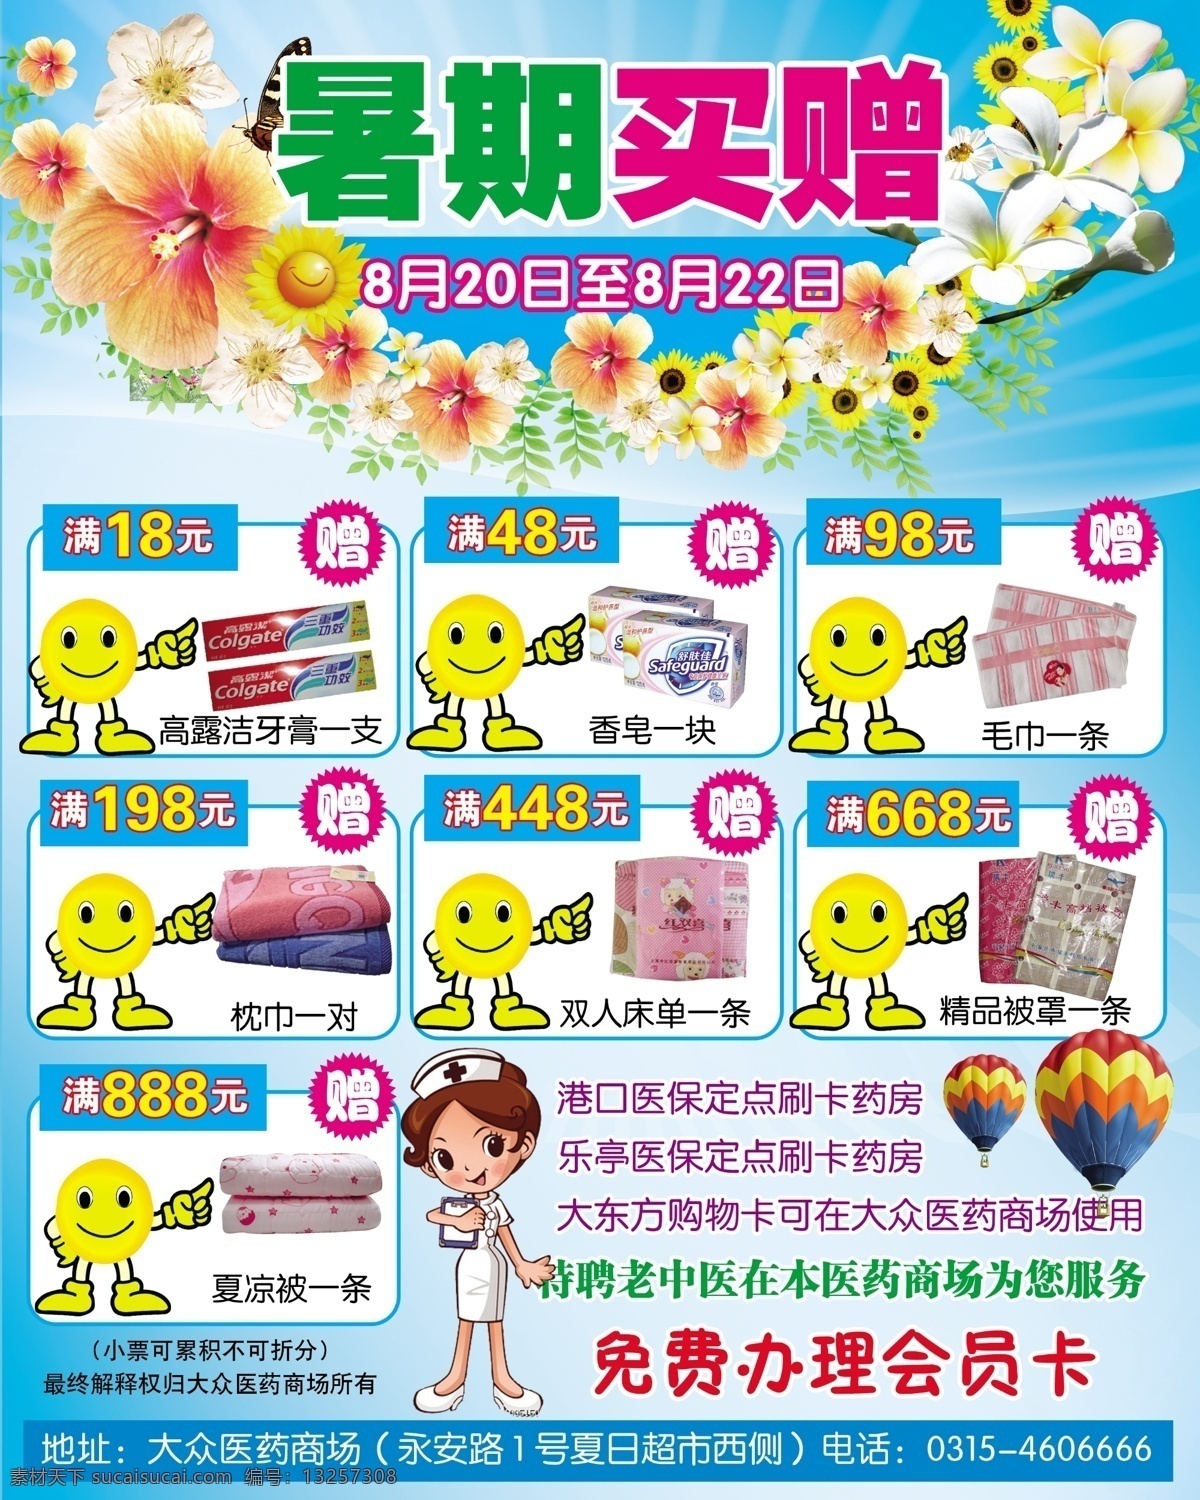 药店彩页 矢量人物 花 笑脸 标签 气球 底色 暑假活动 dm宣传单 广告设计模板 源文件